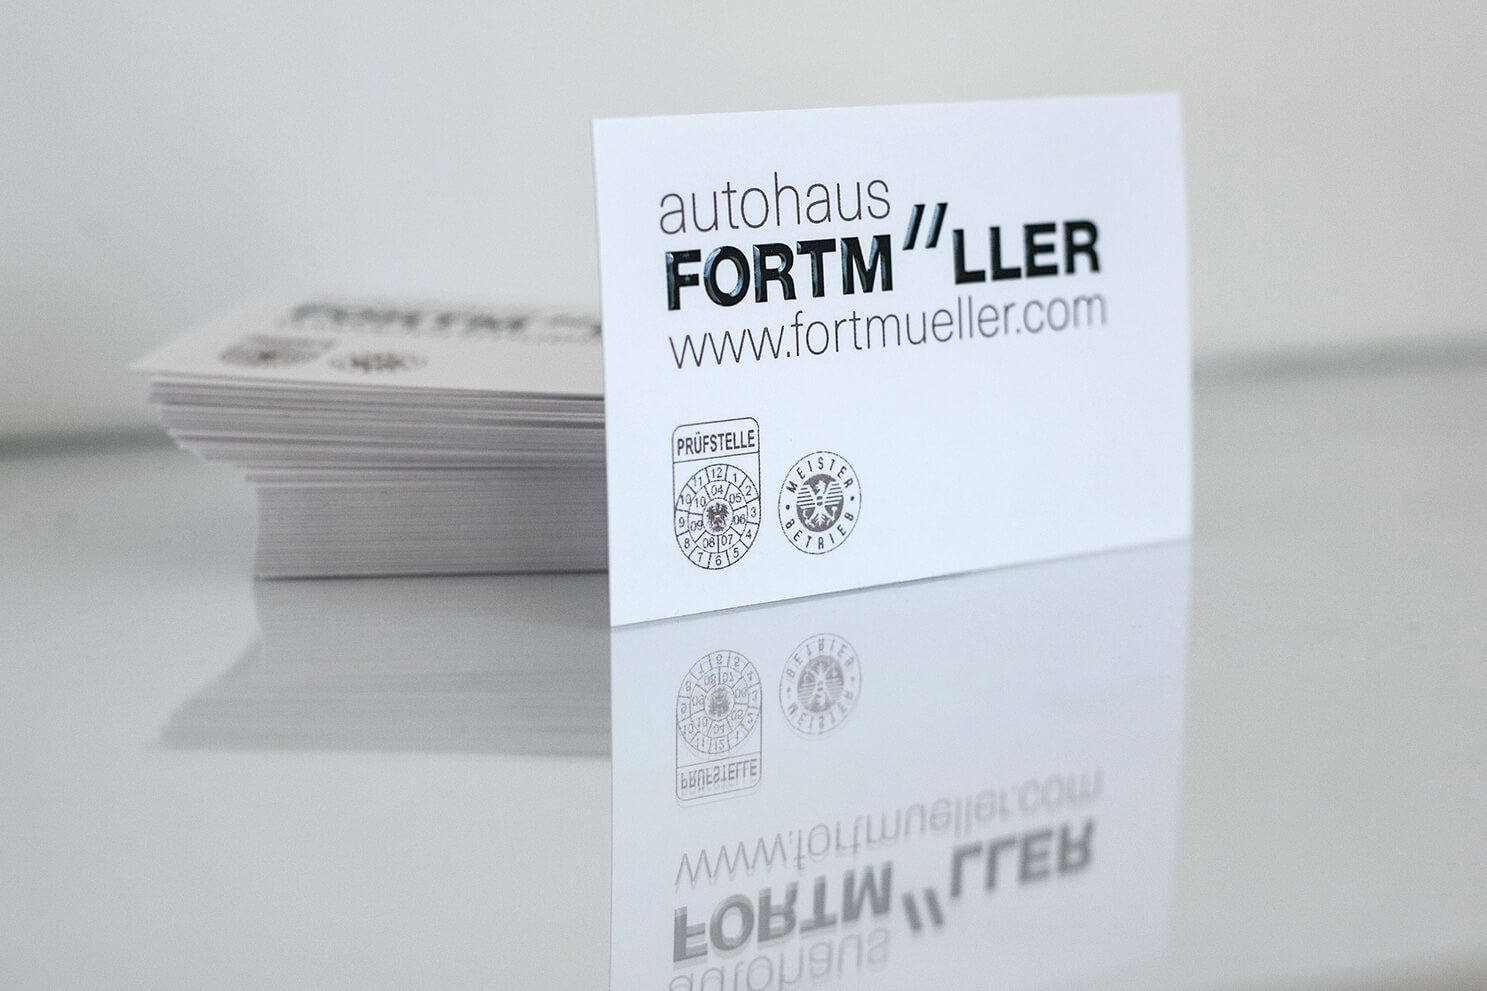 Autohaus Fortmüller, Corporate Design, Branding, Firmenauftritt, Grafik, Werbung, Logo, Visitenkarten